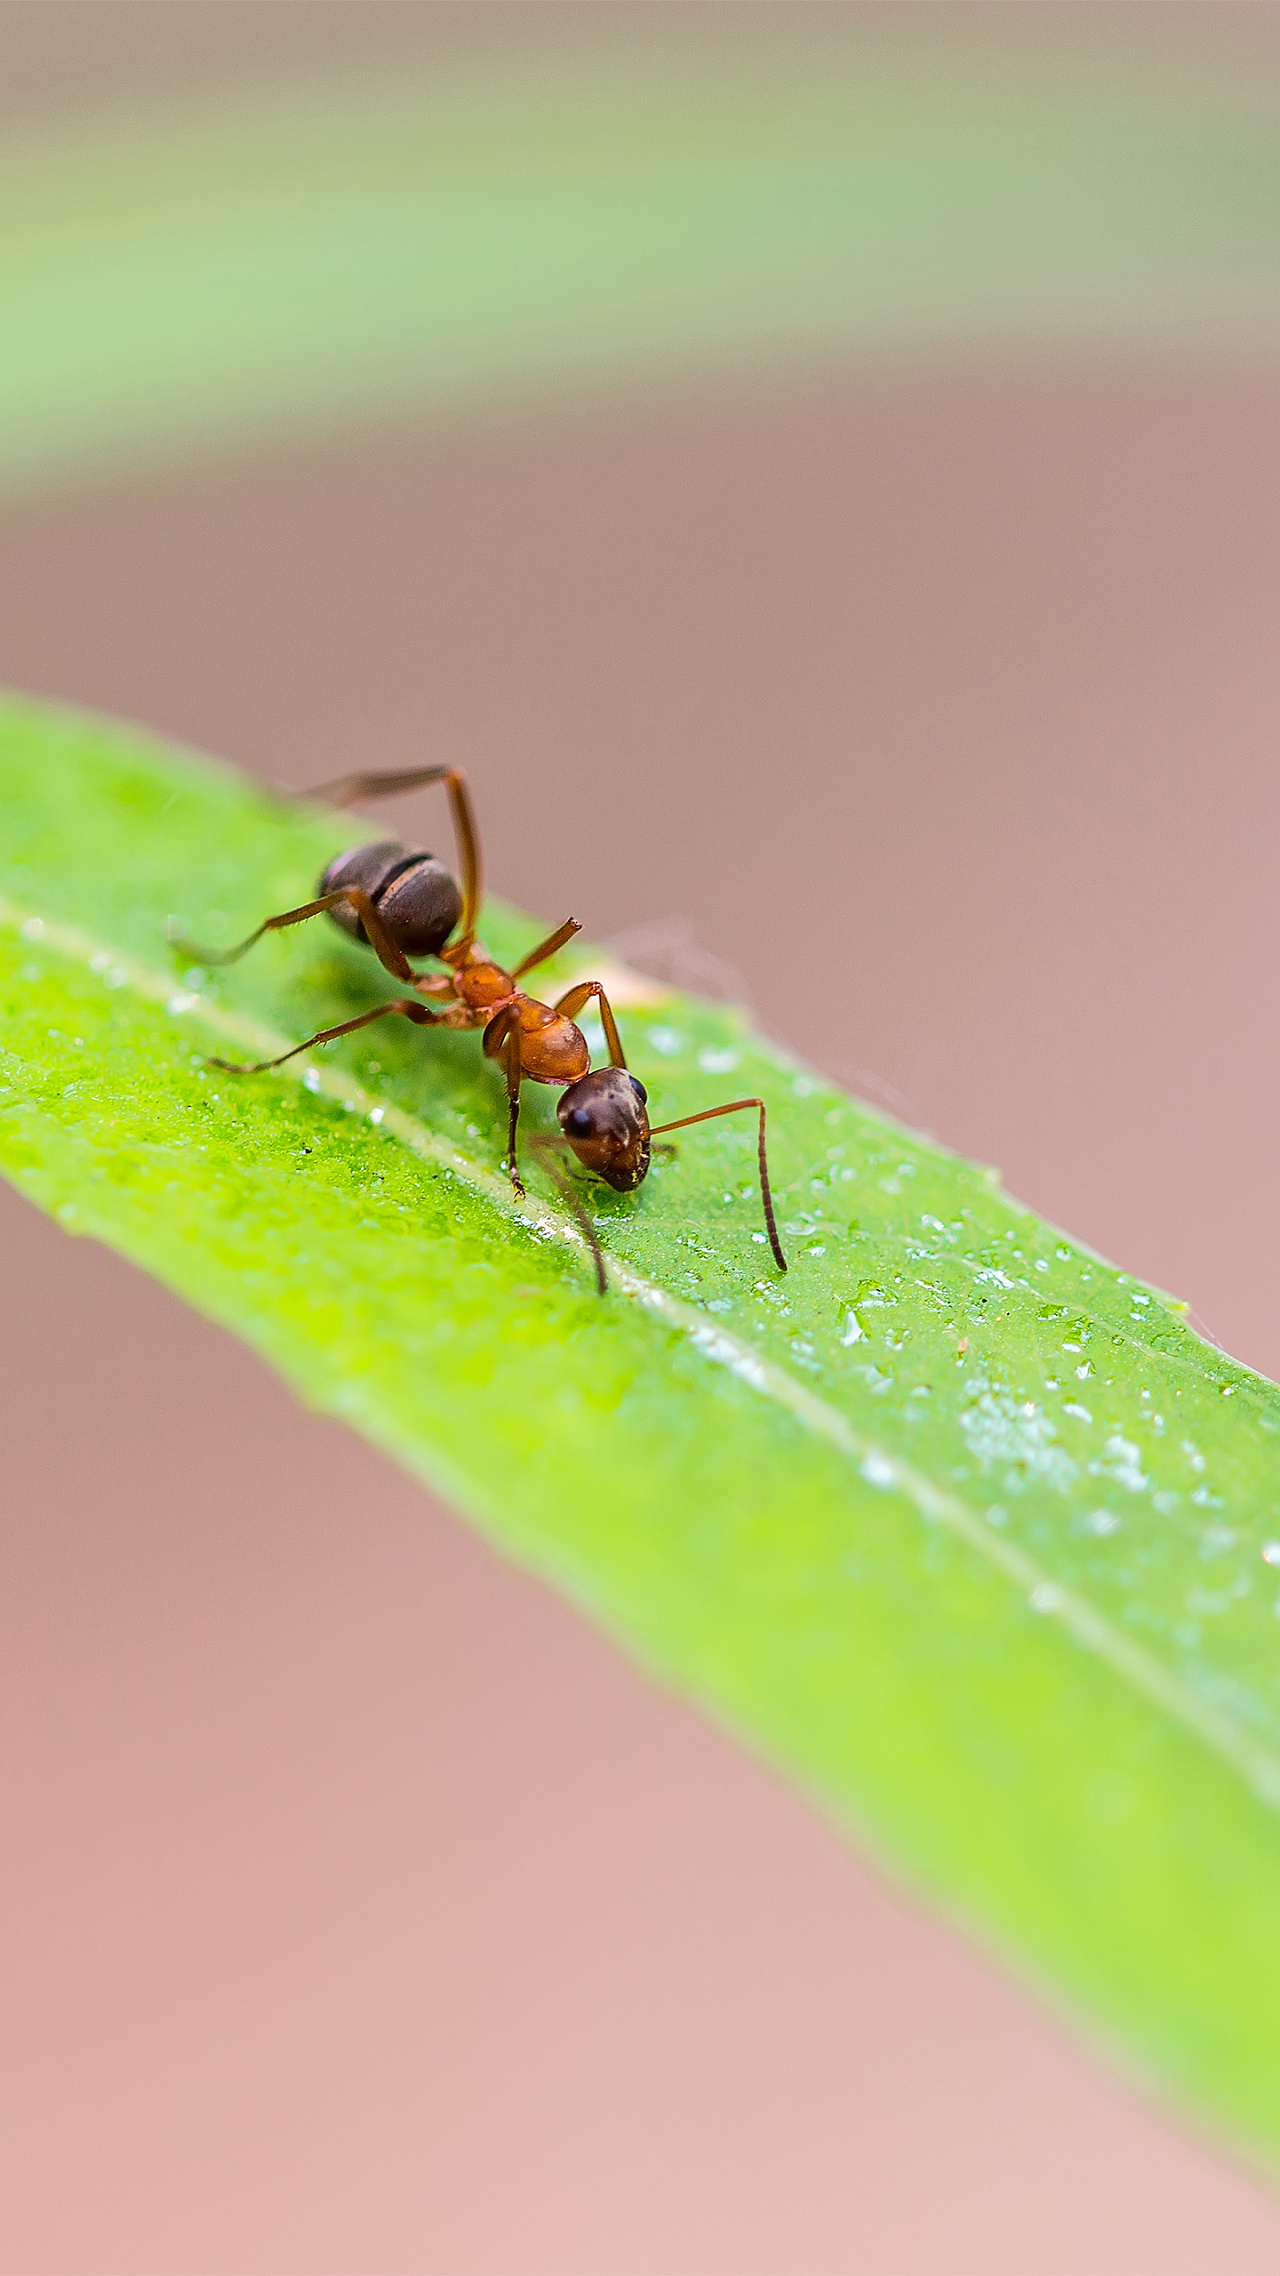 蚂蚁卵孵化-图库-五毛网